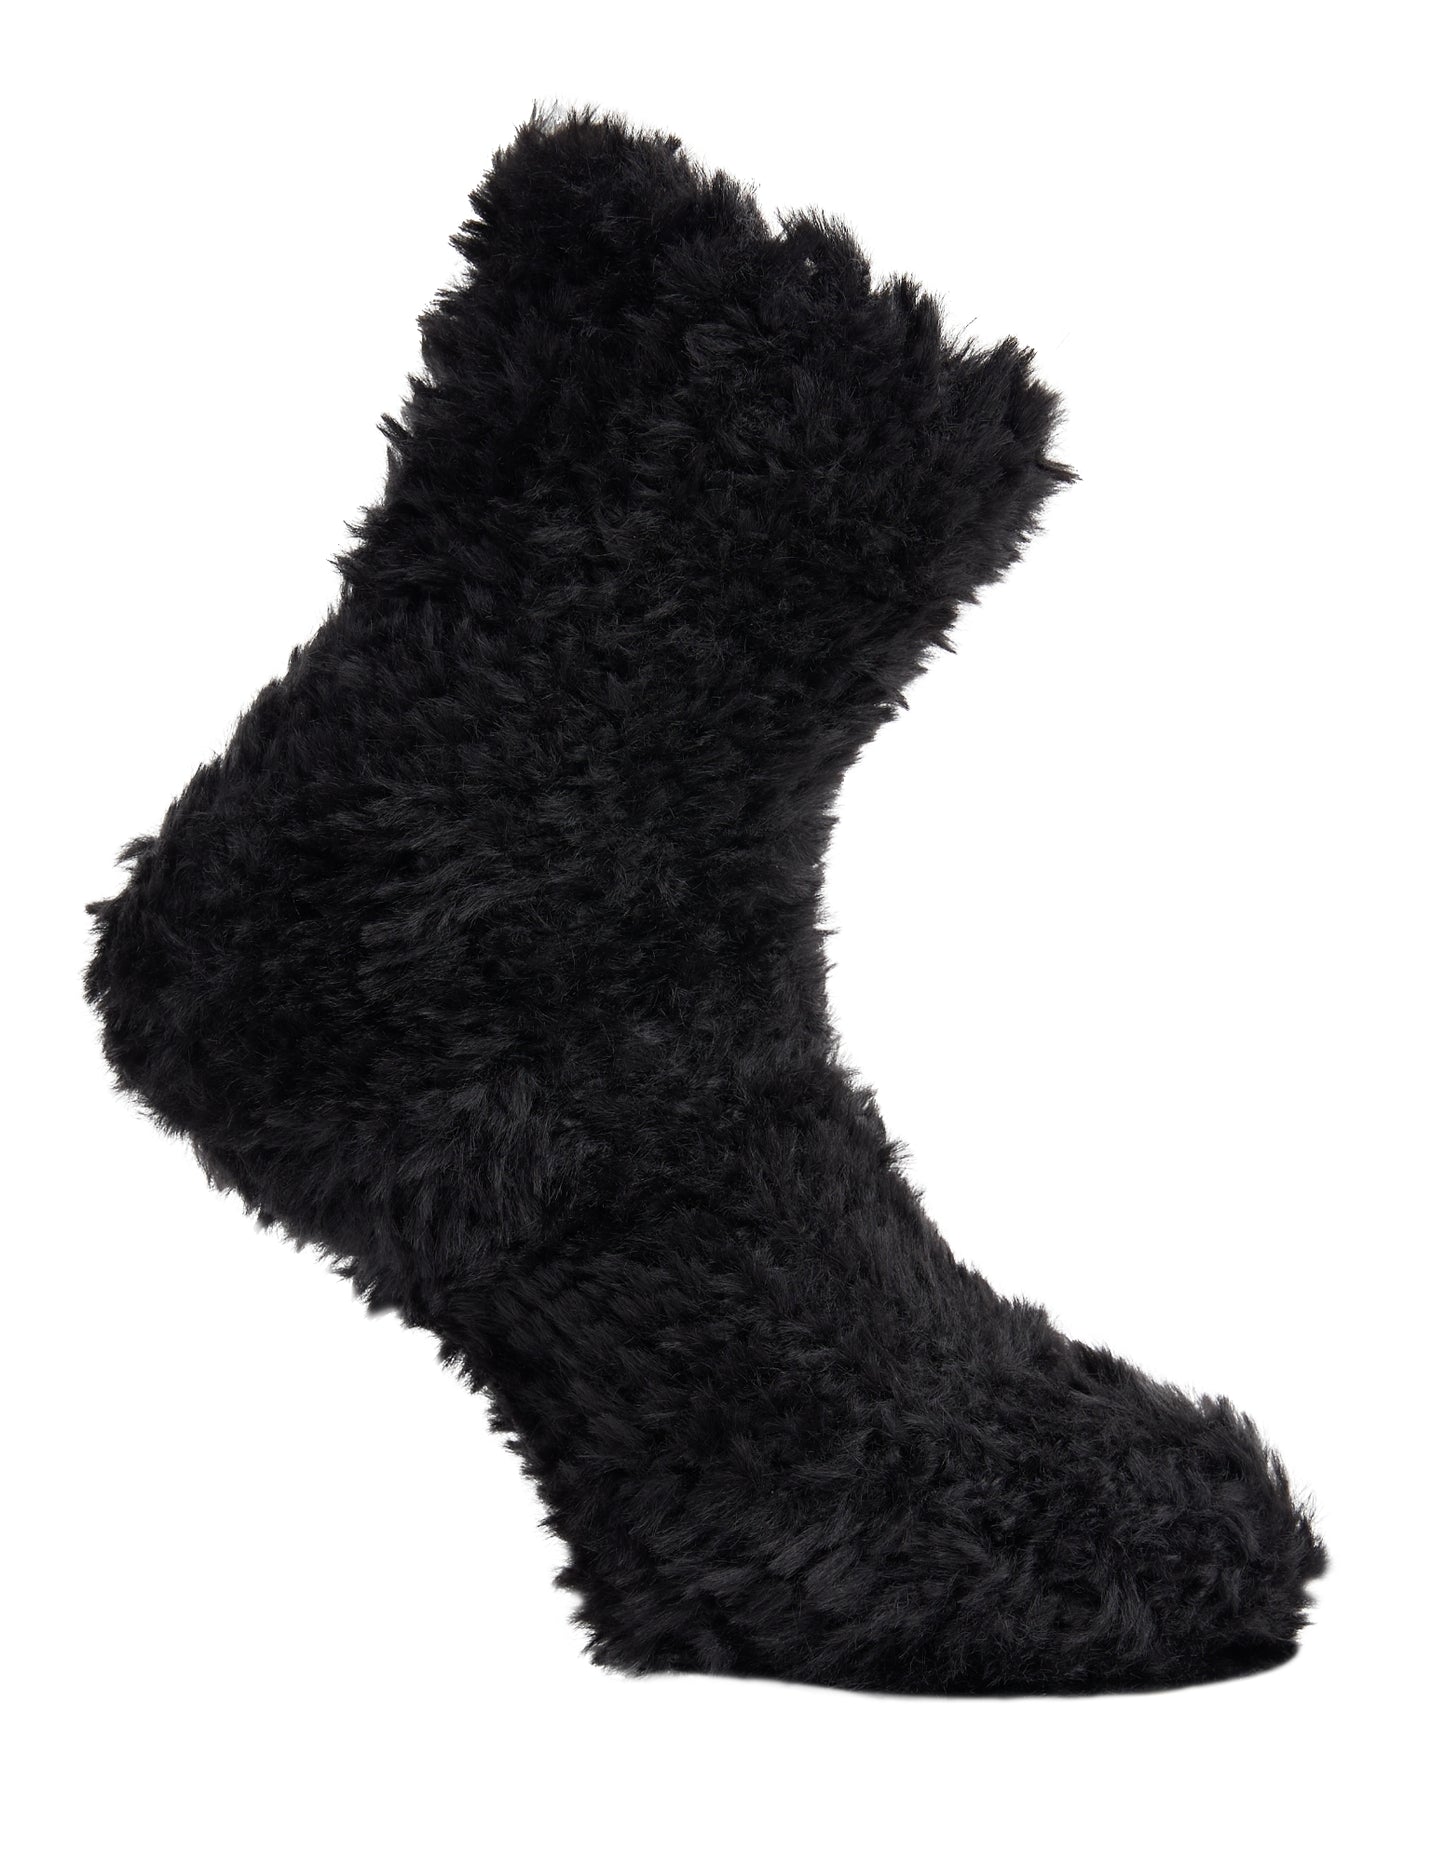 Side of Simon de Winter Women's Cosy Home Socks in Black